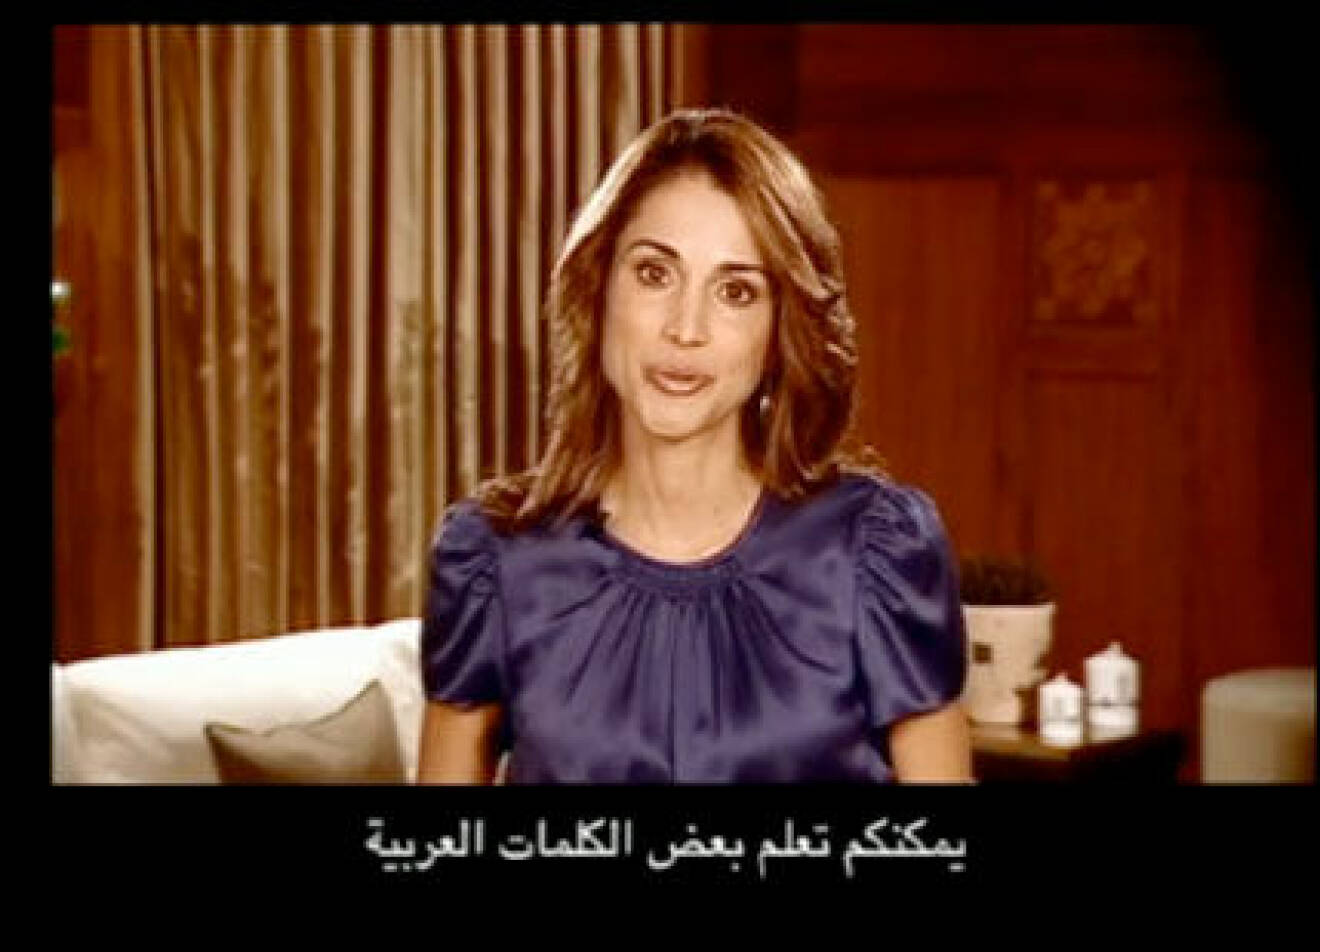 Drottning Rania har kapat en egen twitVid-kanal.